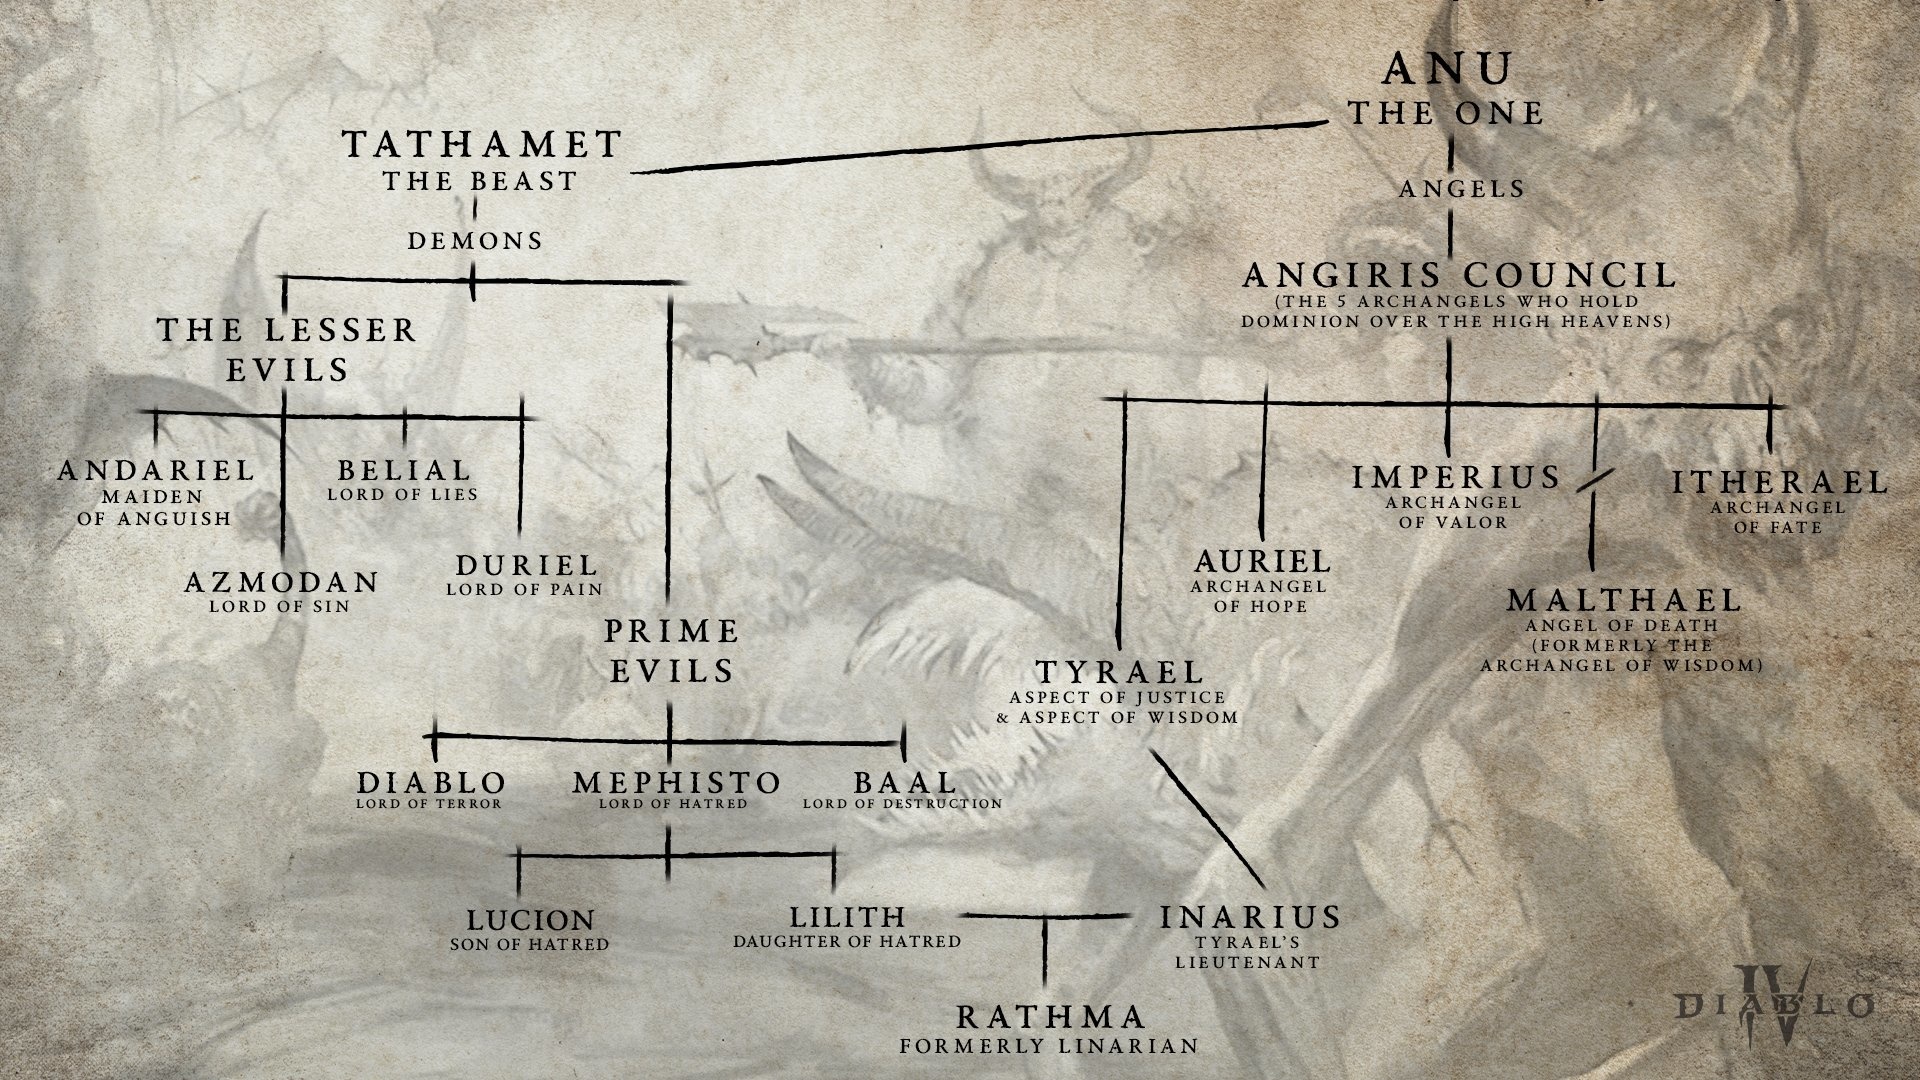 (Partendo dal primo Anu, l''albero genealogico mostra gli angeli e i demoni fino al figlio di Lilith e Inarius)